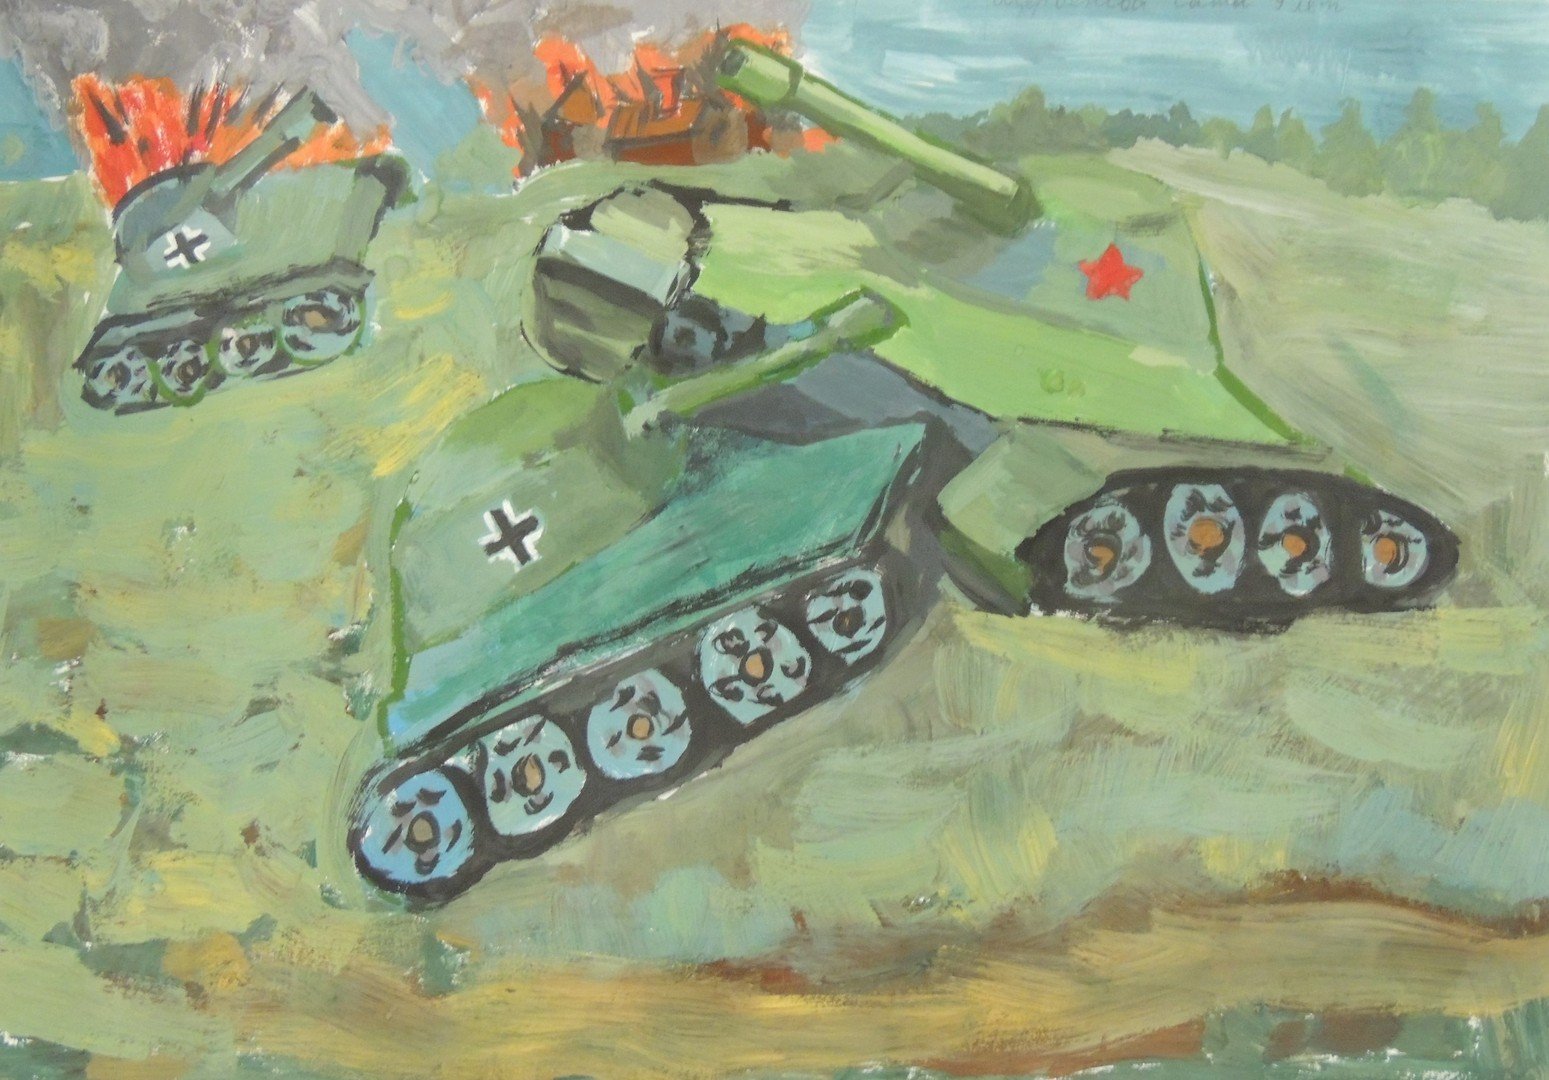 Детский рисунок танка